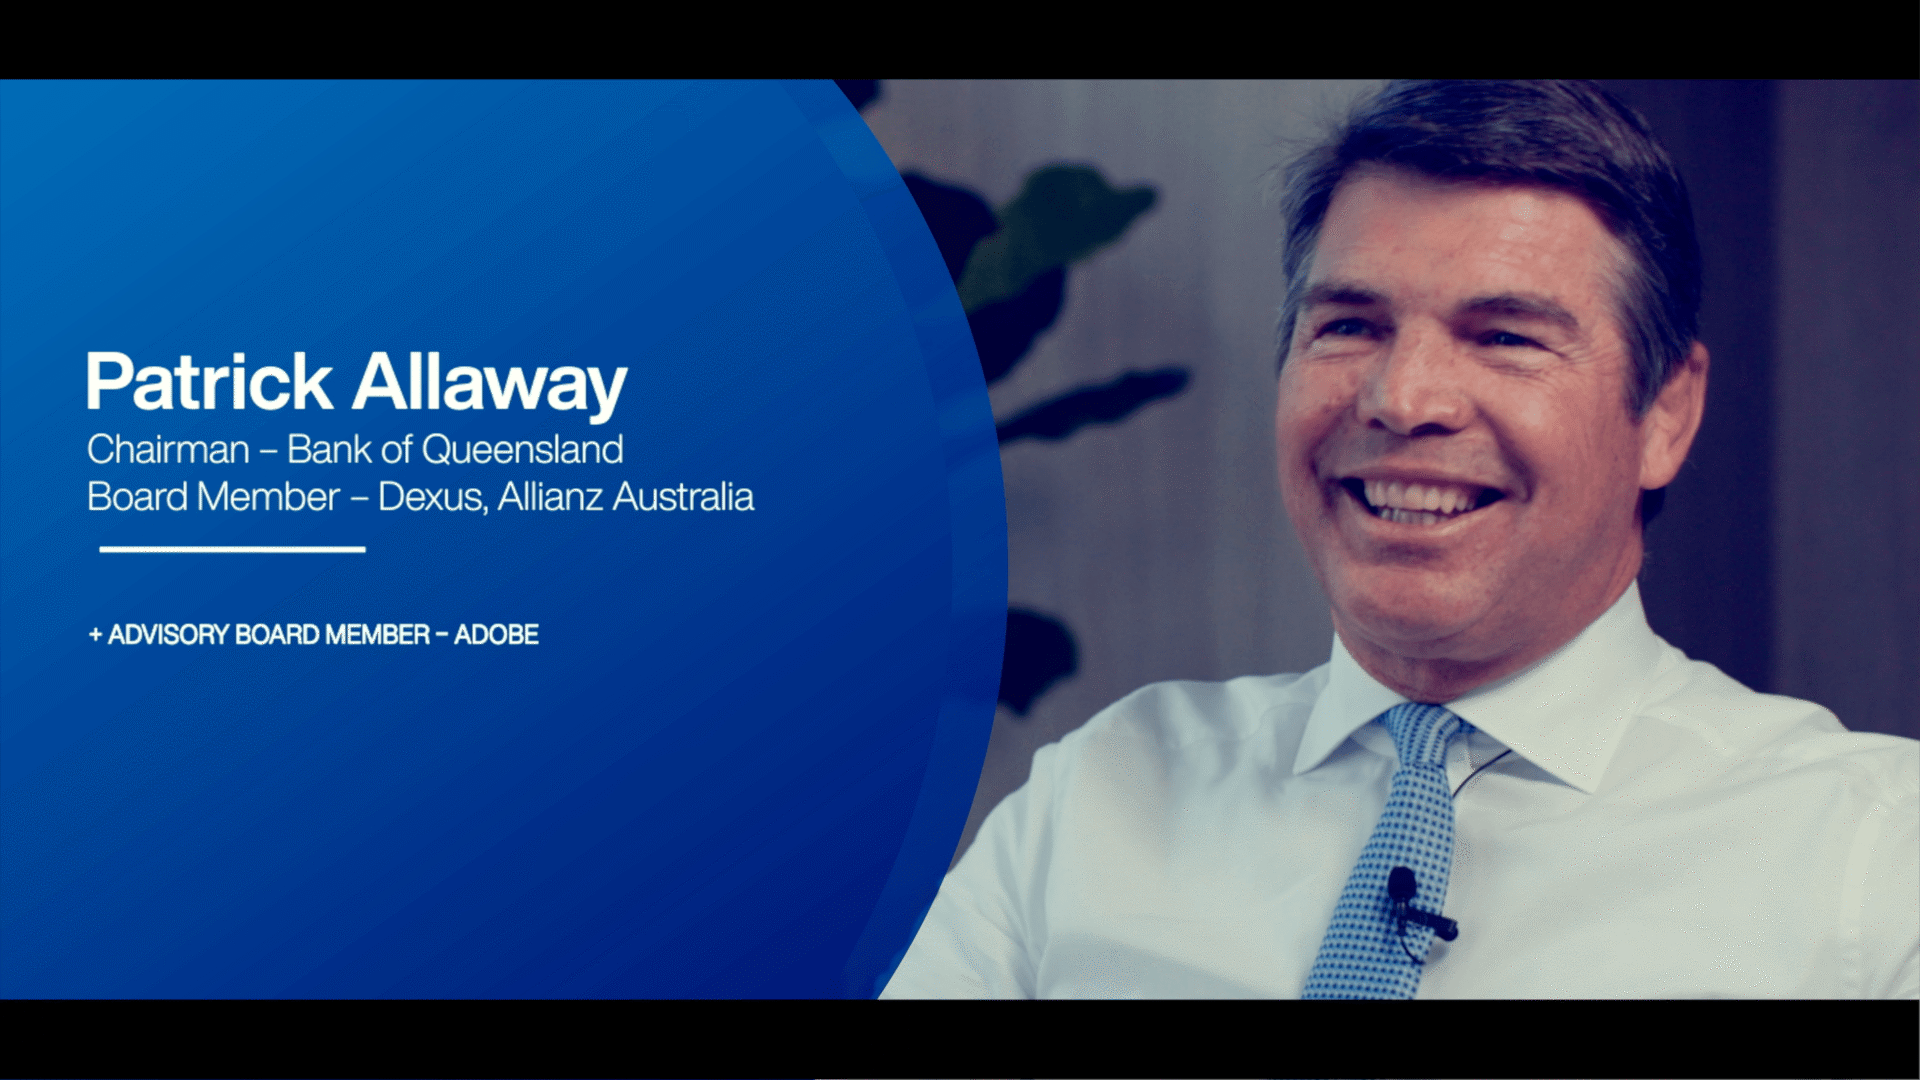 Patrick Allaway - Bank of Queensland